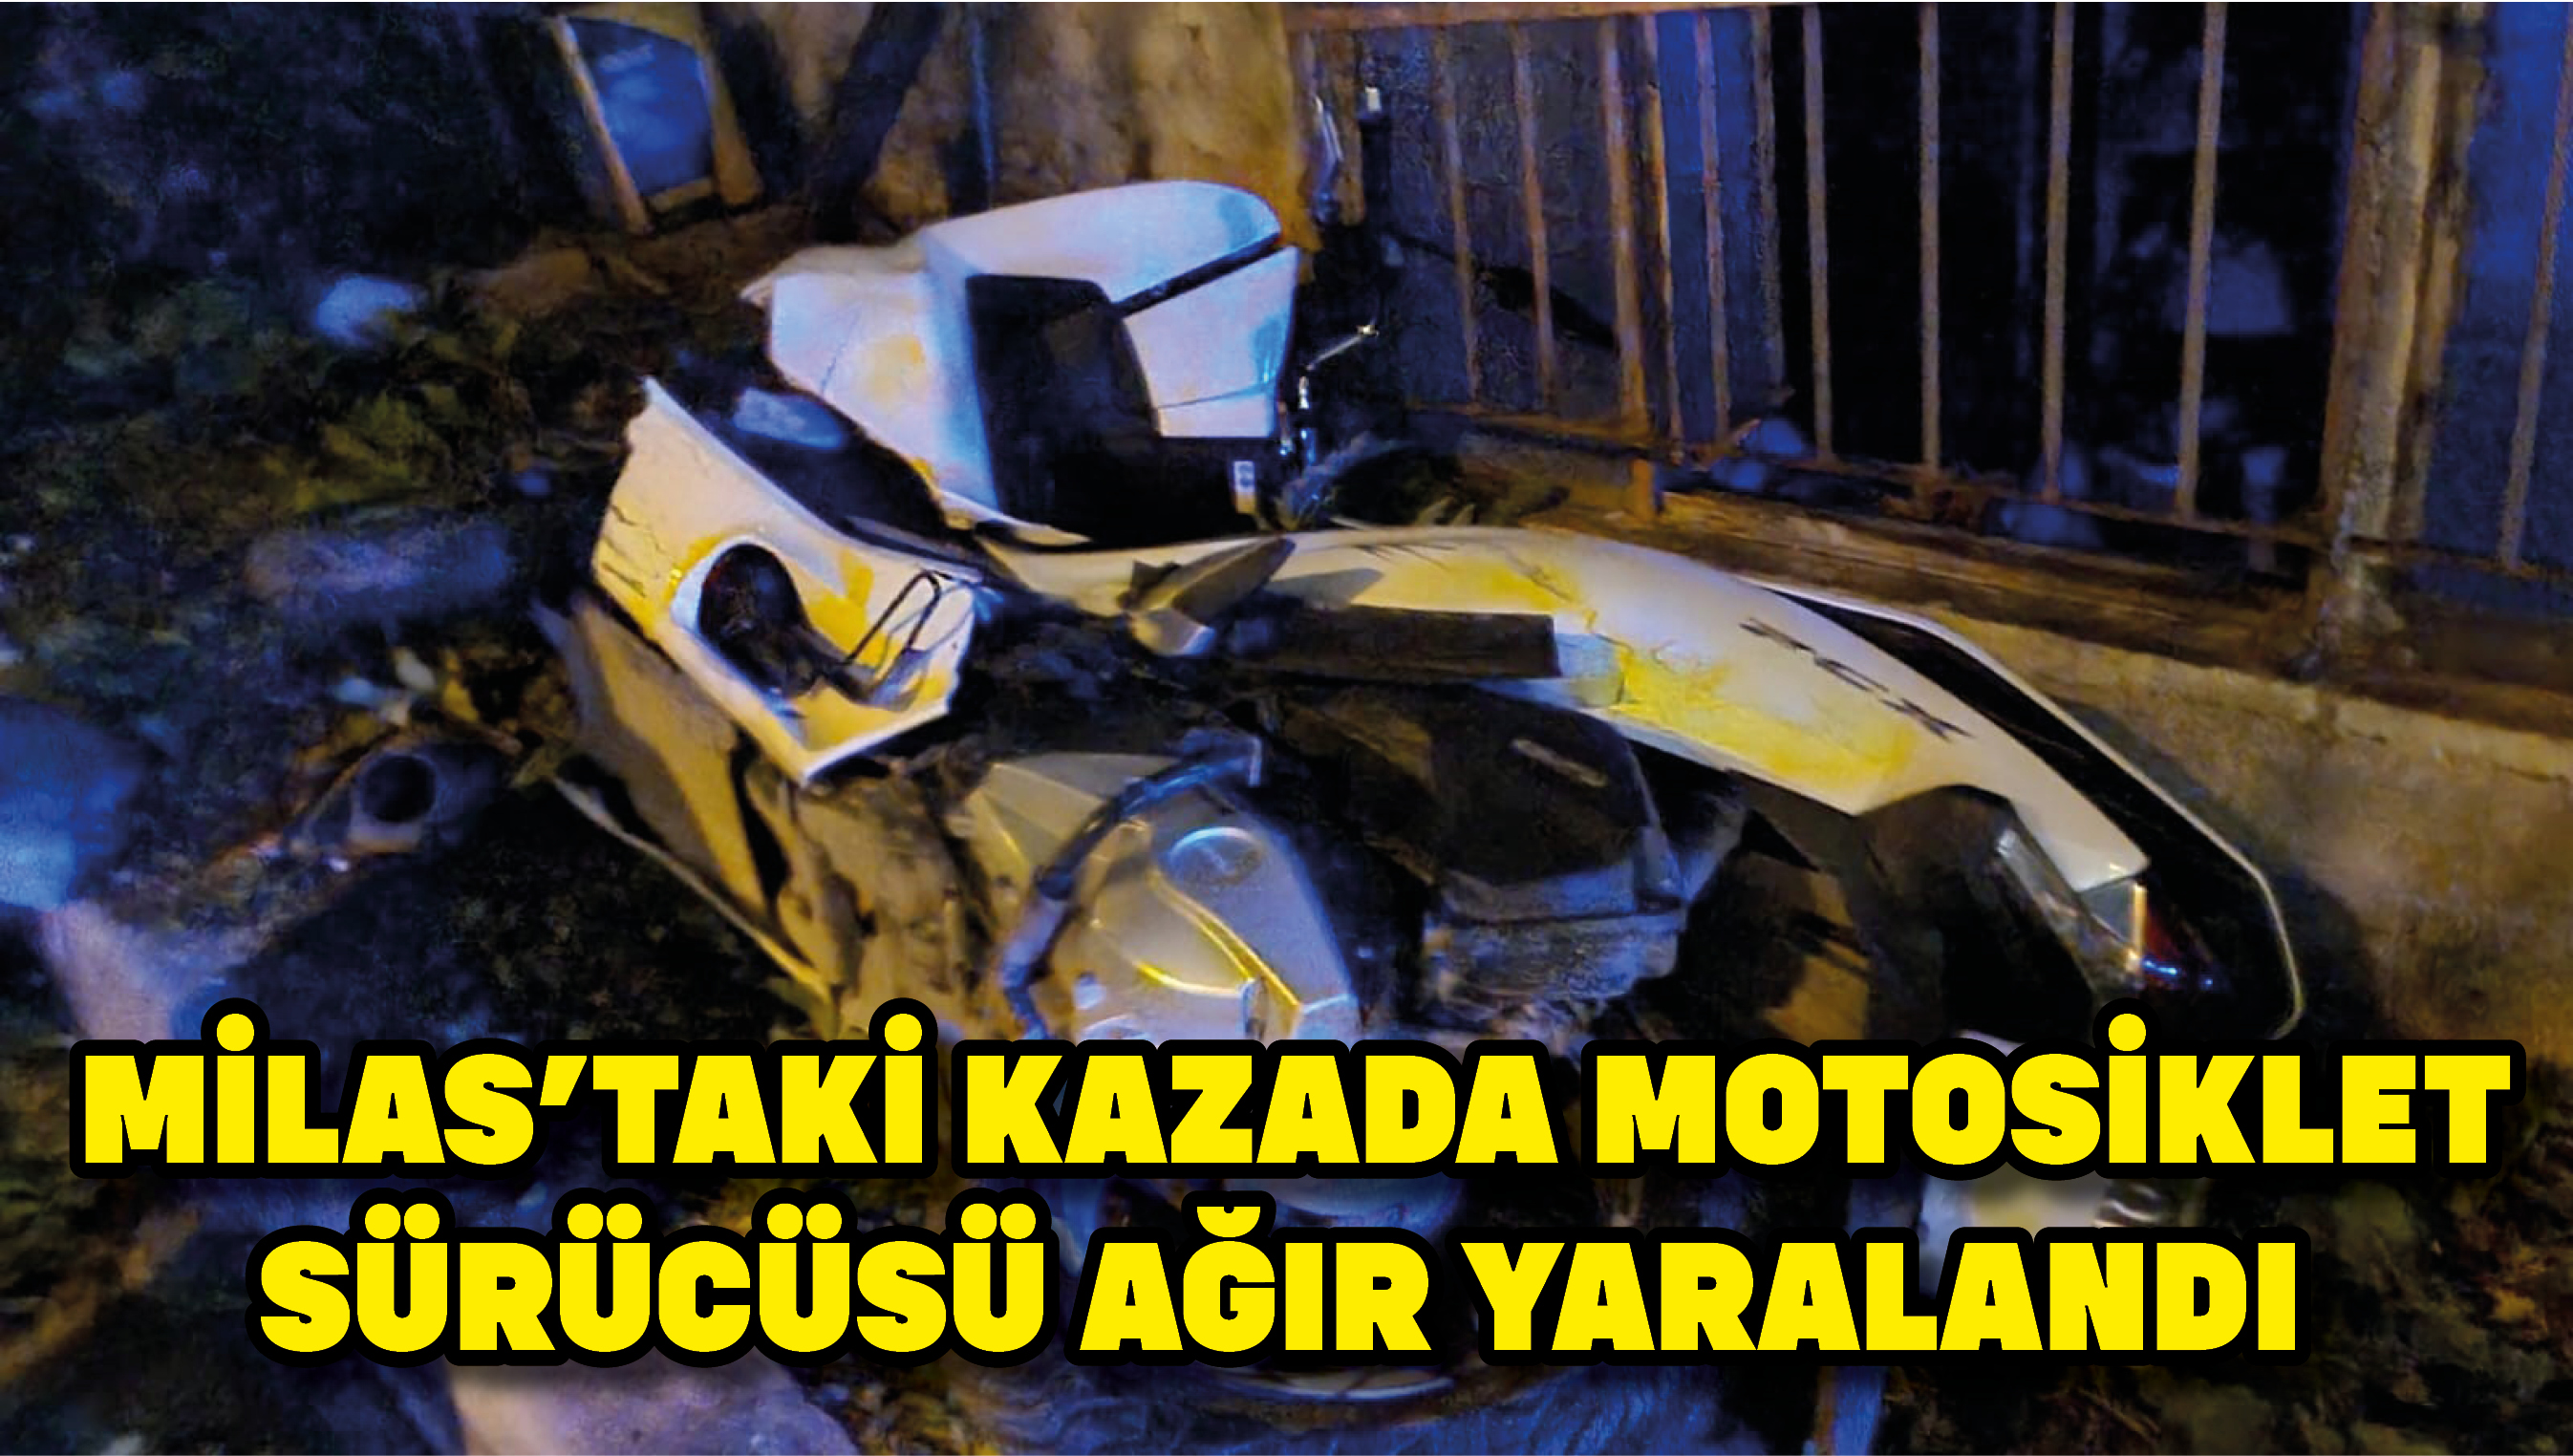 Milas’taki kazada motosiklet sürücüsü ağır yaralandı